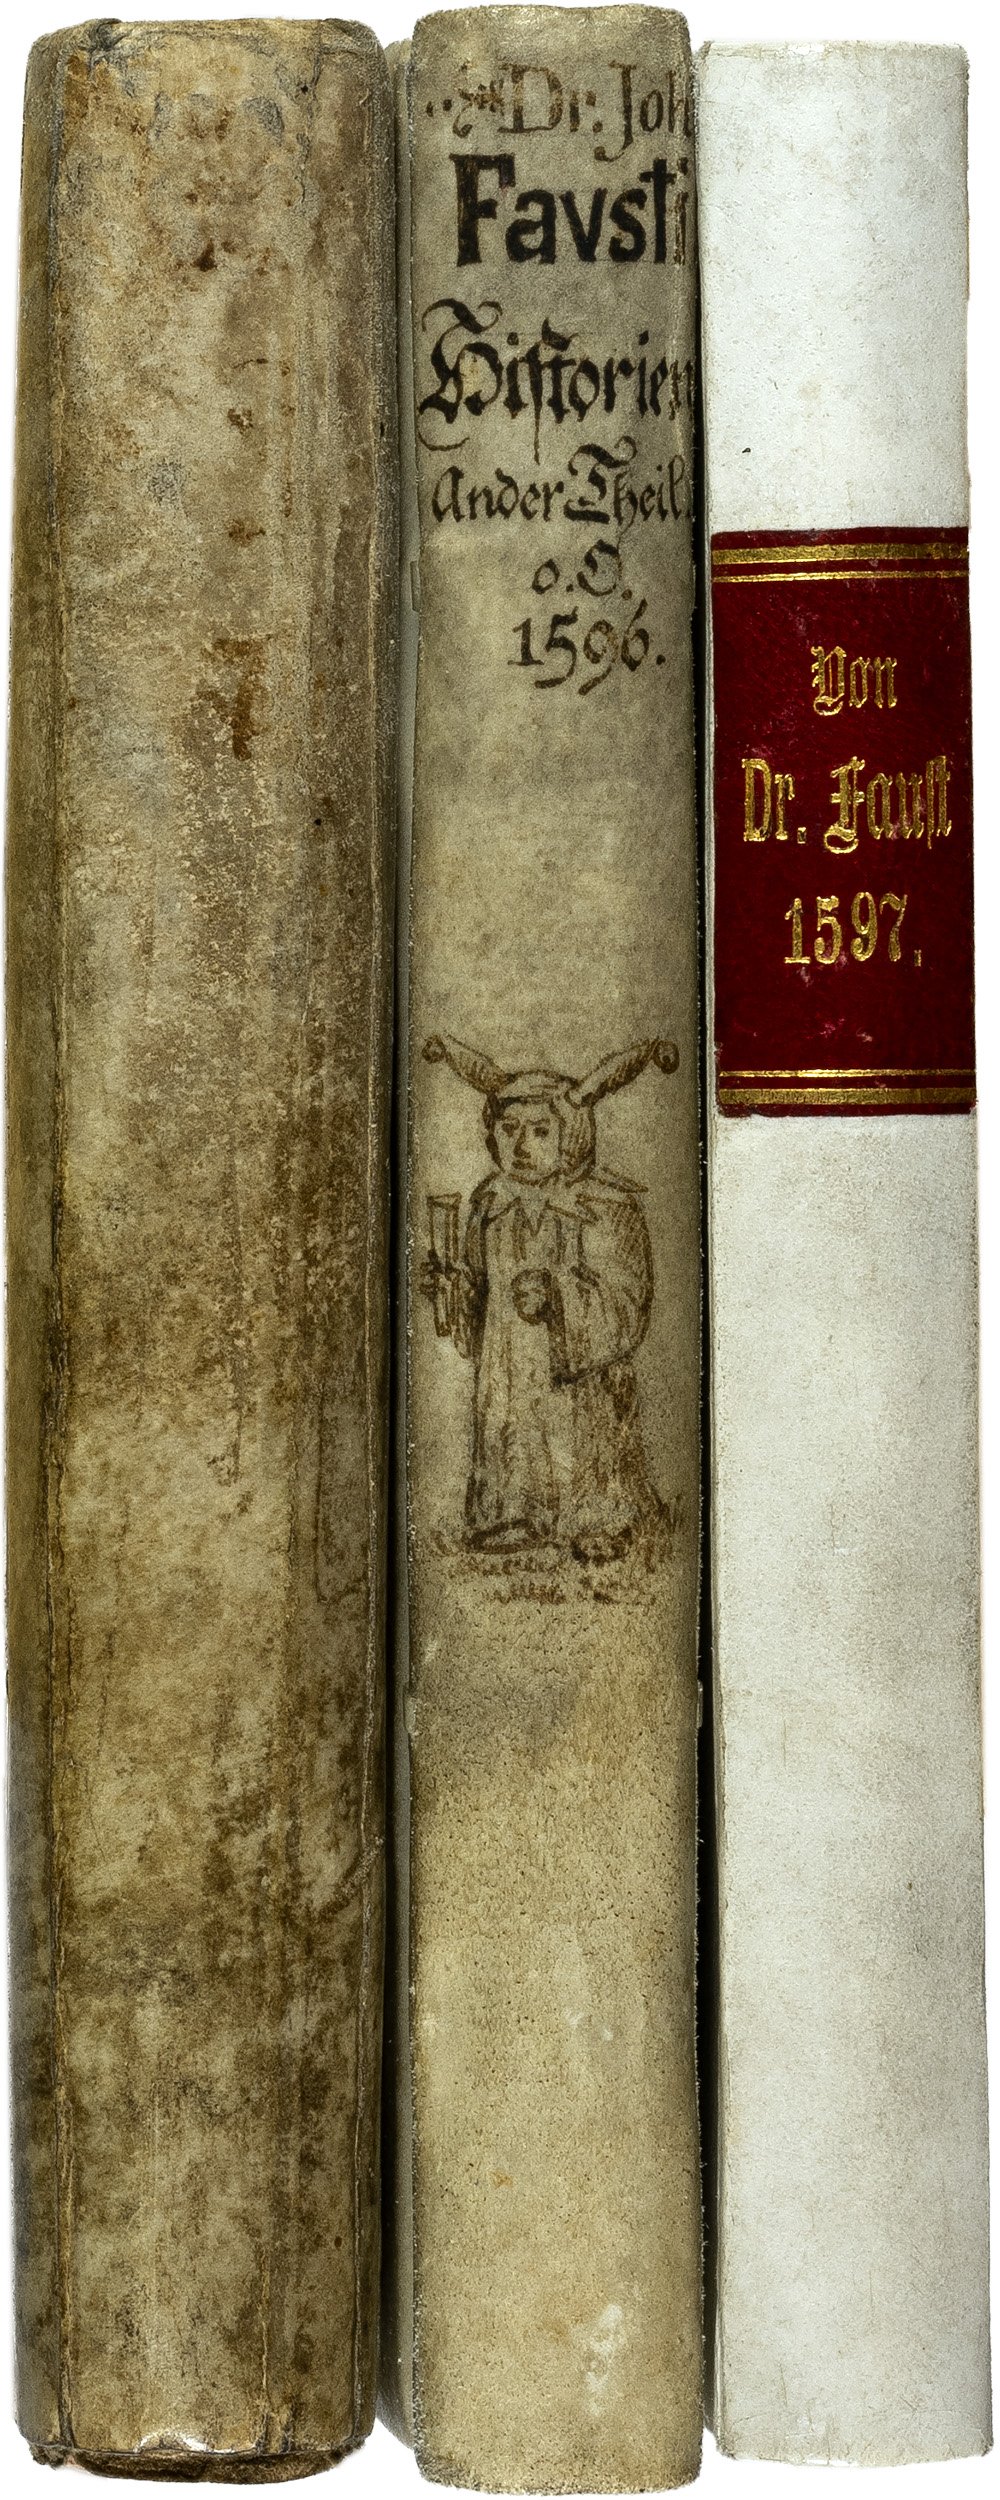 Dr.-Faust-historia-Wagner-1589-1597-1596-unica-rarissimum-1.jpg